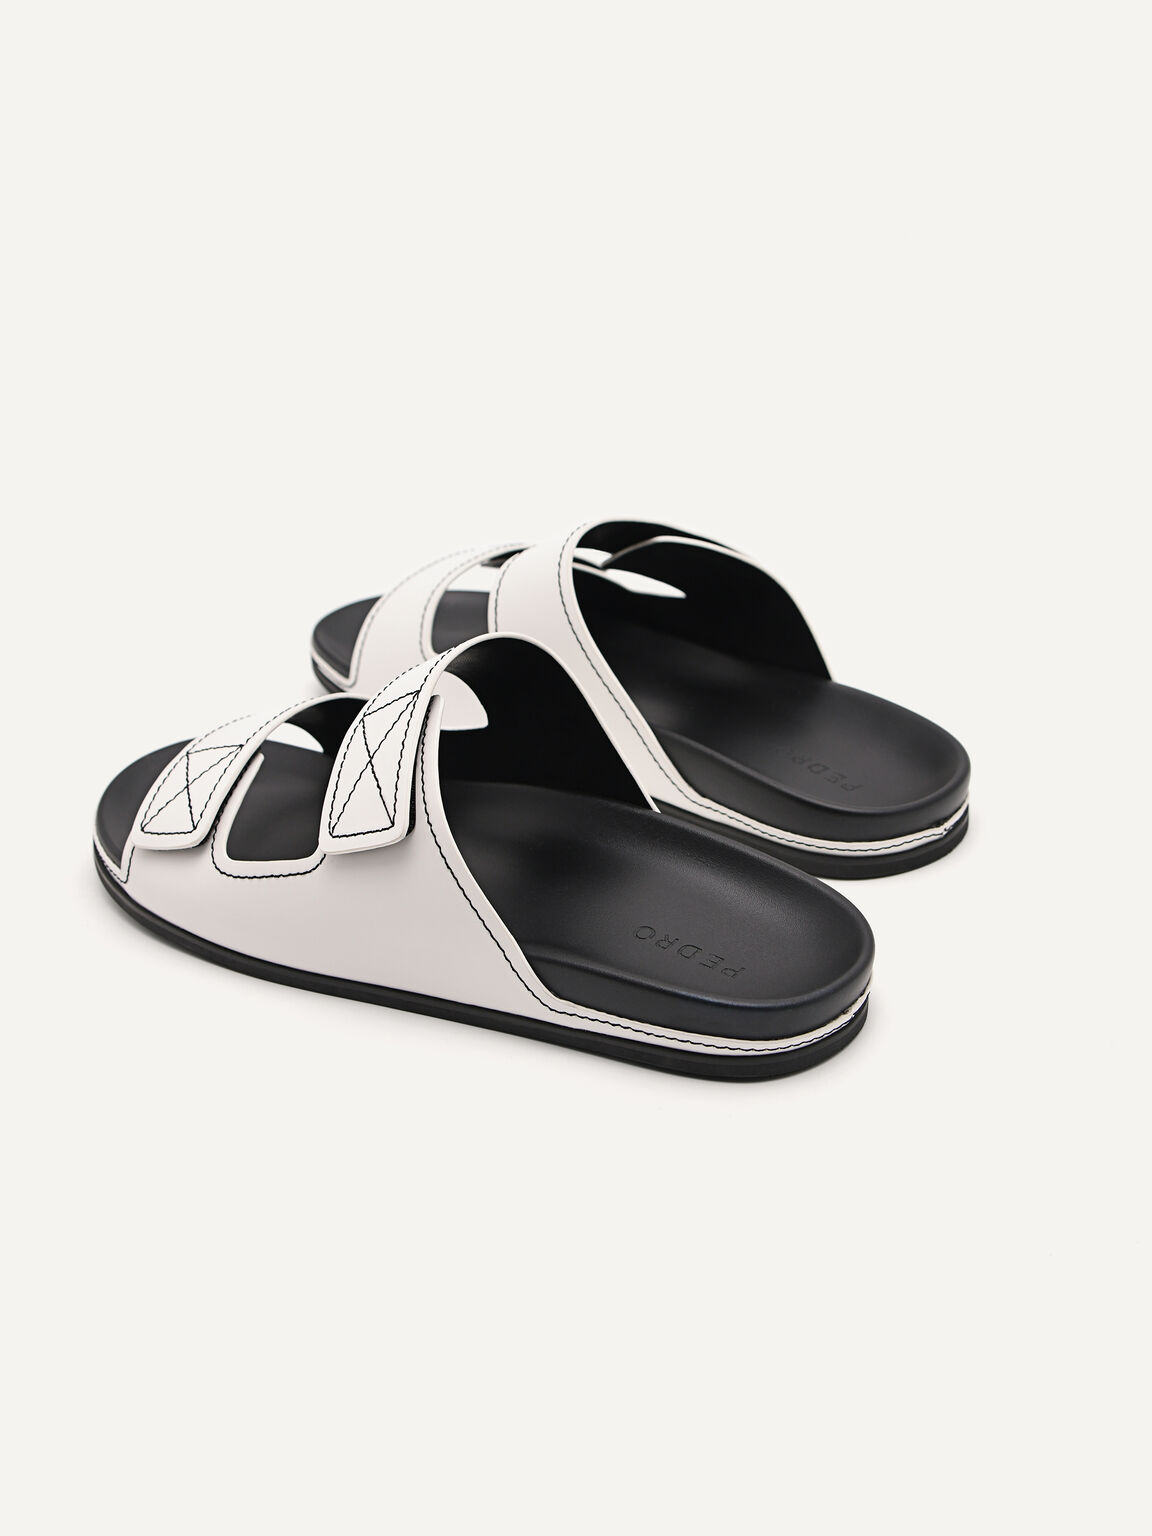 Slide Sandals, White